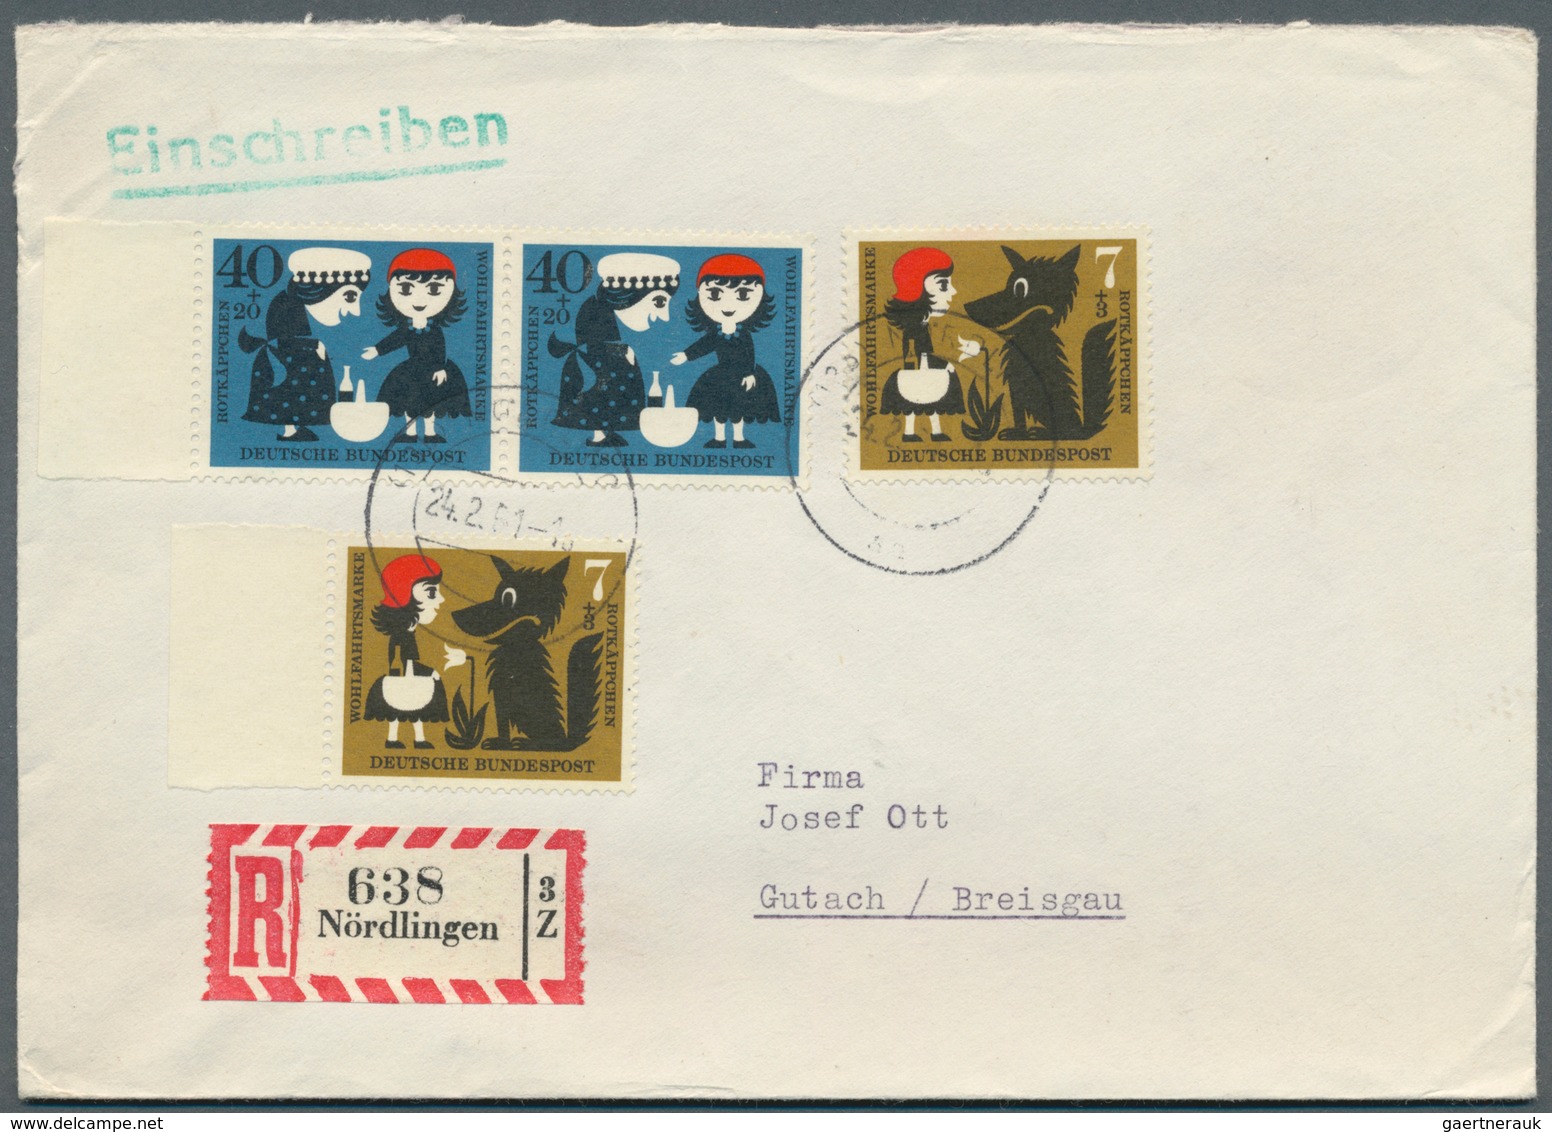 Bundesrepublik Deutschland: 1950/1970 (ca.), vielseitiger Bestand von ca. 830 Briefen/Karten mit dek